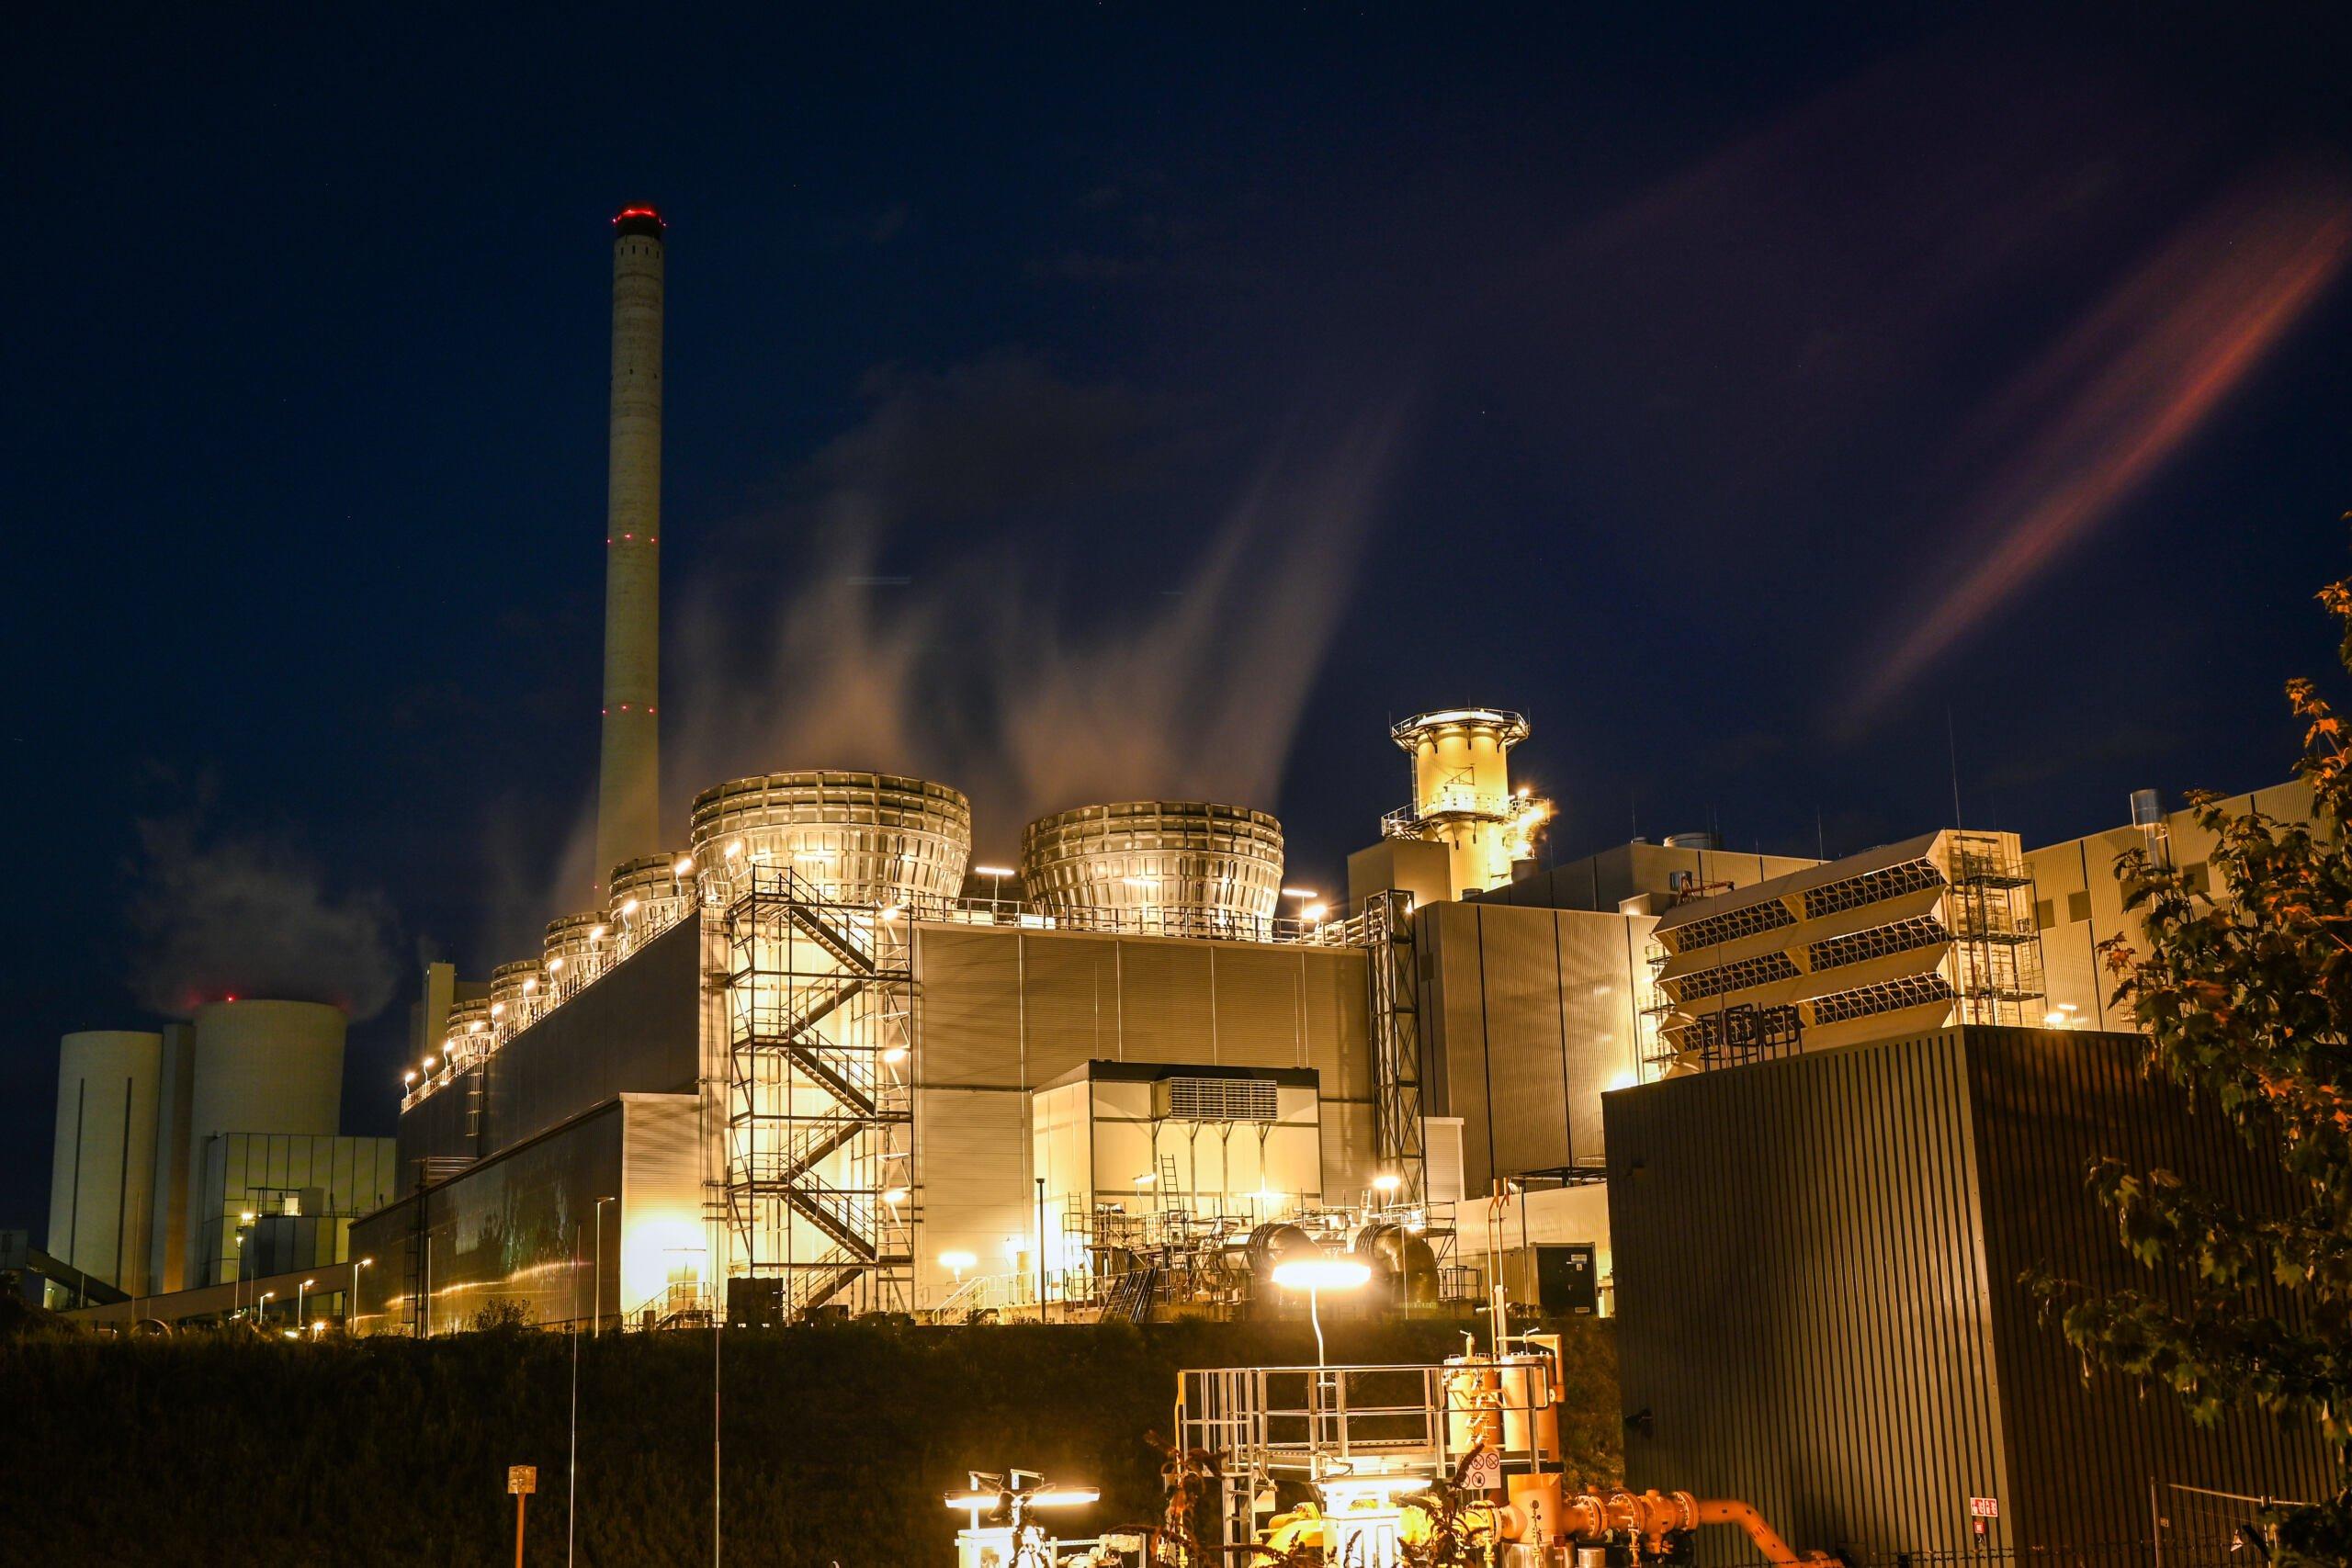 Zdjęcie przedstawia nowo wybudowaną elektrownię gazowo-parową niemieckiego koncernu energetycznego Steag elektrowni węglowej w Herne, w zachodnich Niemczech, 25 sierpnia 2022 r. - Koncern energetyczny Steag z Essen chciał na początku roku przebudować starą elektrownię węglową Herne 4 na elektrownię gazową. W marcu 2022 roku Steag zdecydował o odłożeniu konwersji i dalszym opalaniu starej elektrowni węglem.